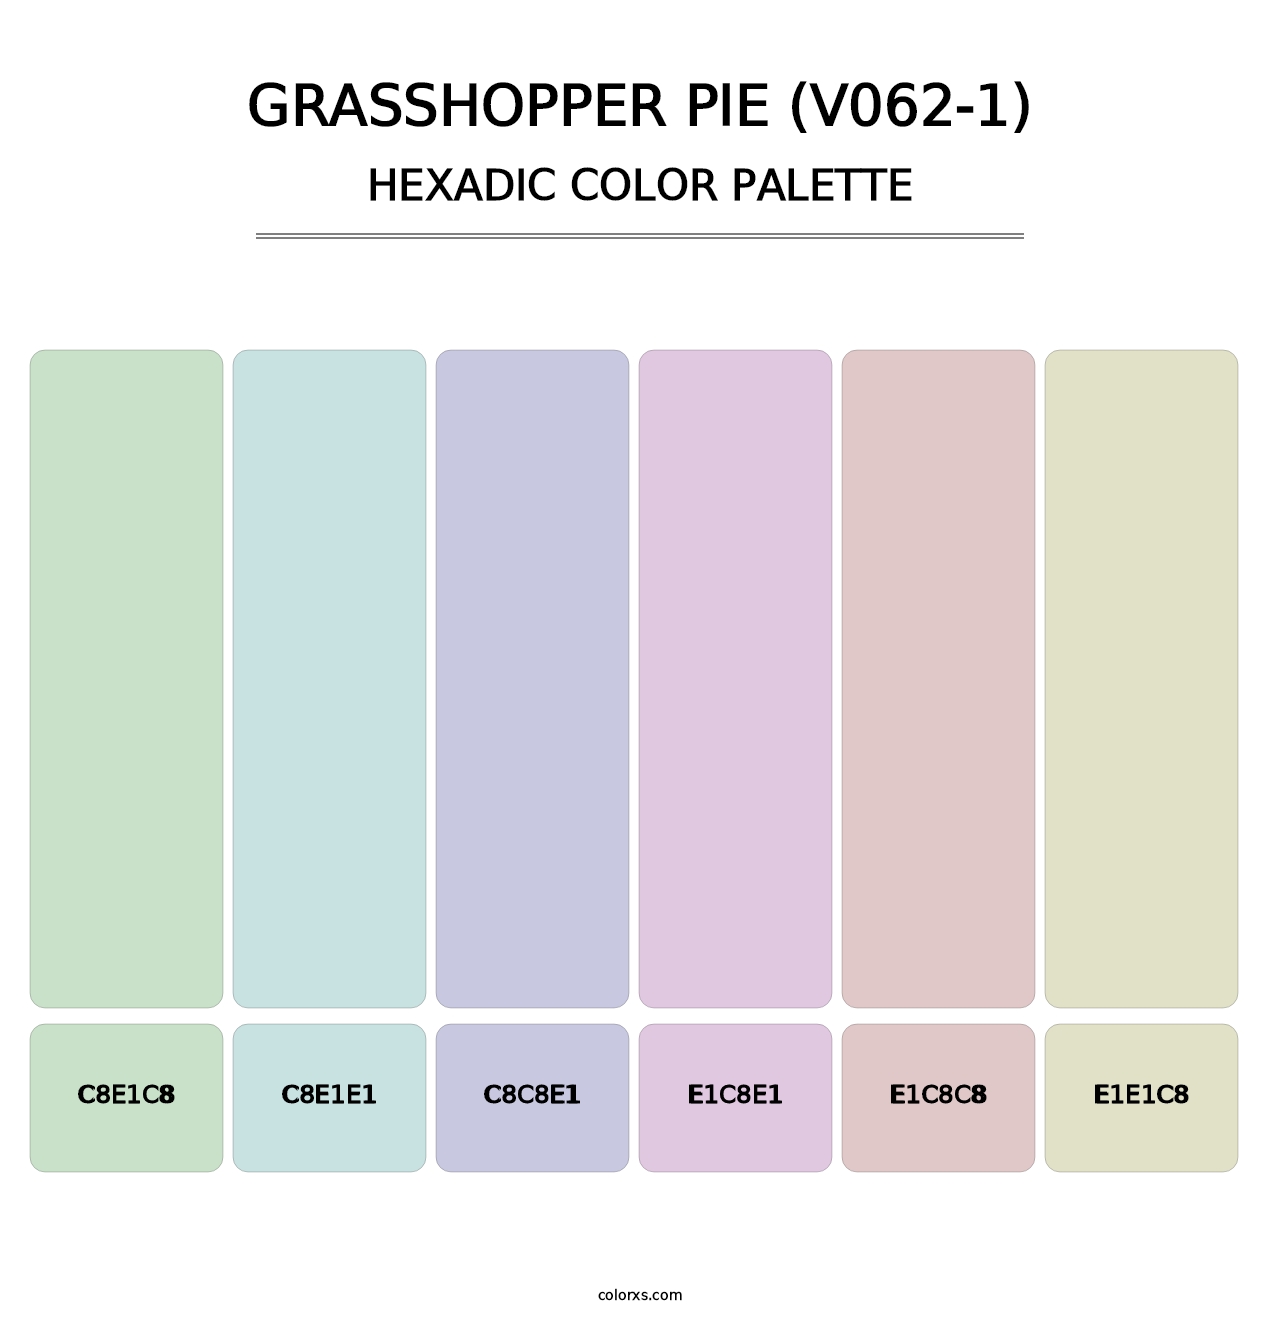 Grasshopper Pie (V062-1) - Hexadic Color Palette